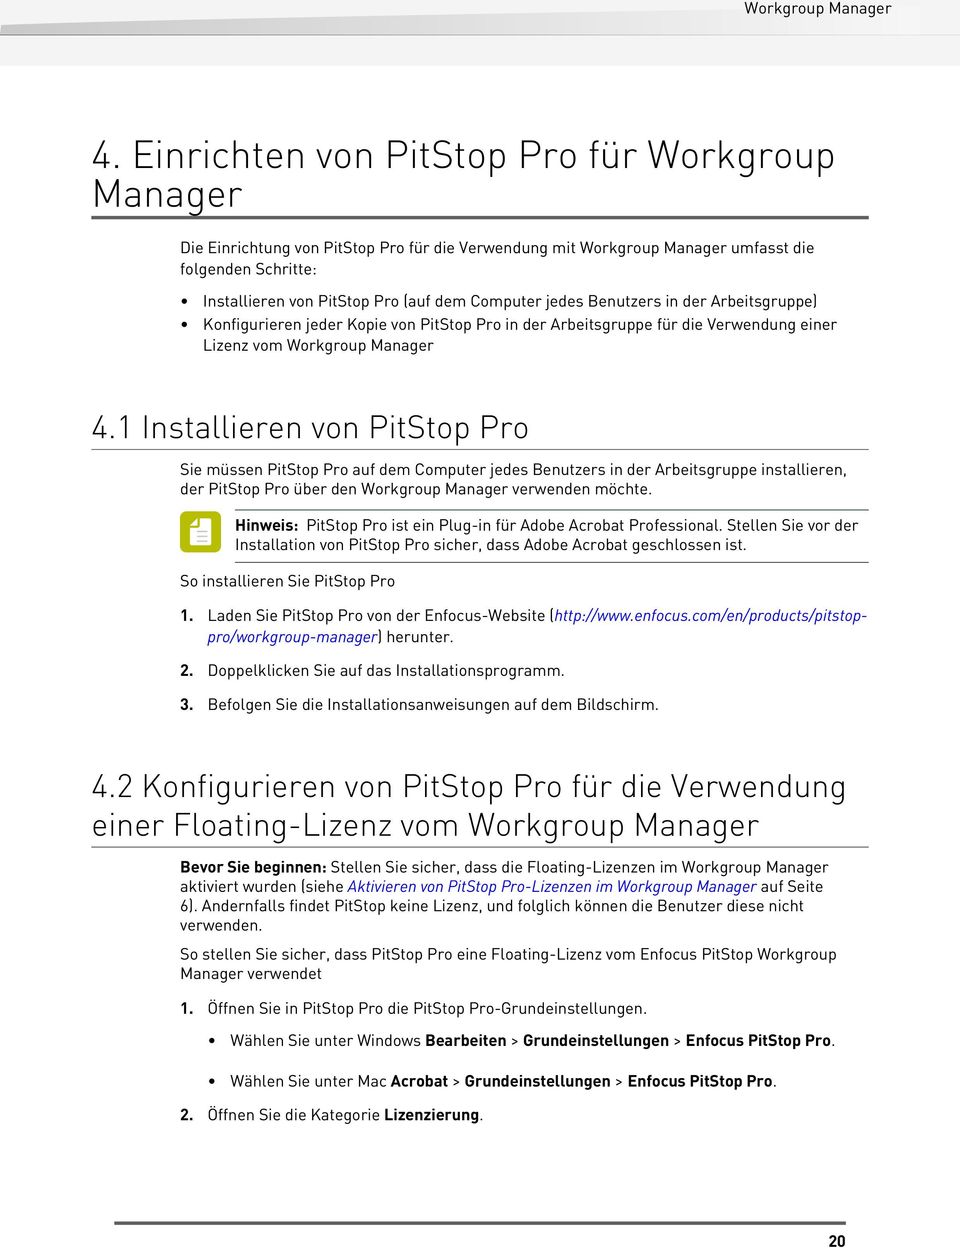 1 Installieren von PitStop Pro Sie müssen PitStop Pro auf dem Computer jedes Benutzers in der Arbeitsgruppe installieren, der PitStop Pro über den Workgroup Manager verwenden möchte.